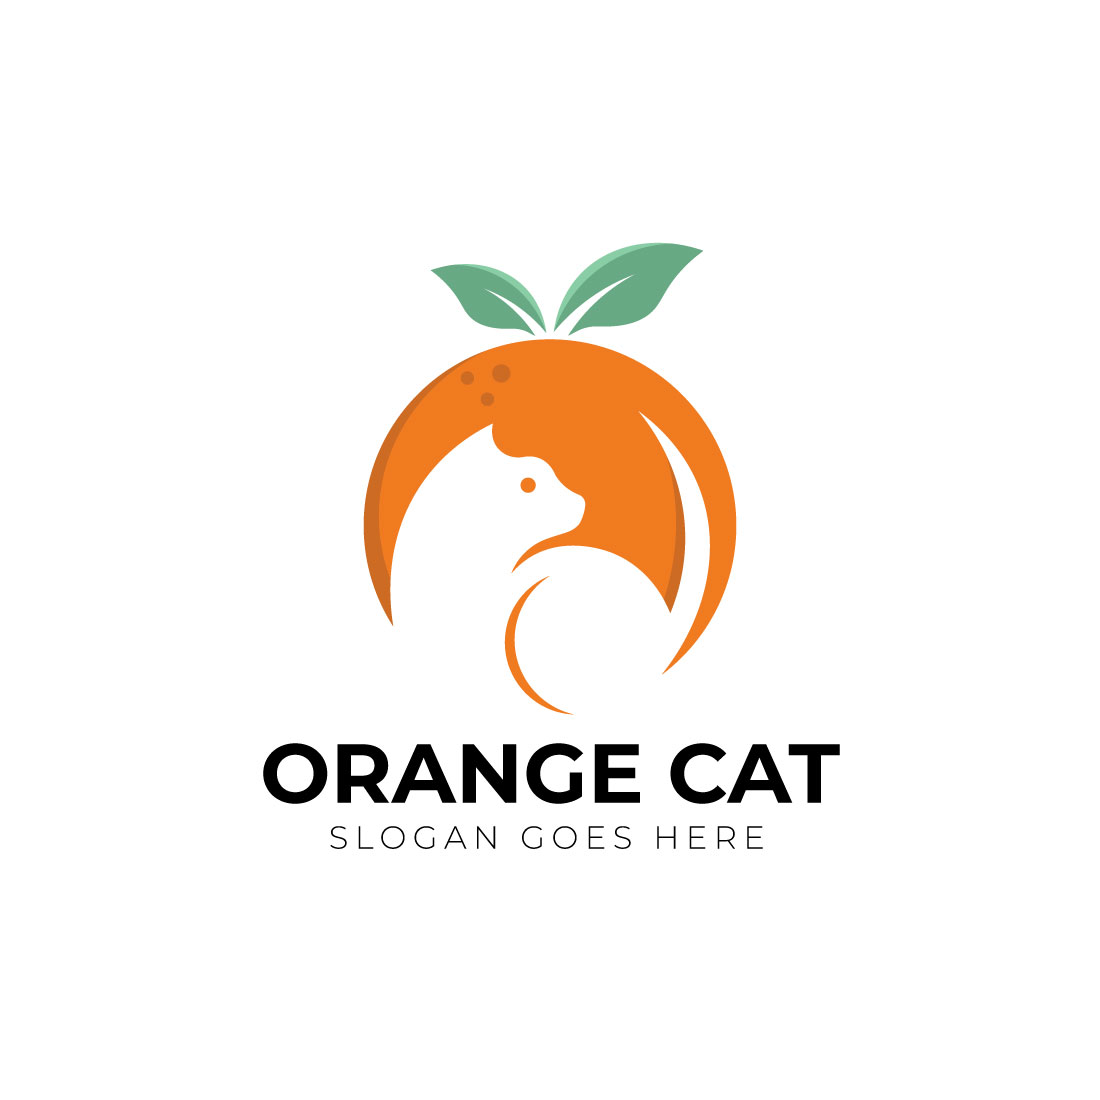 Orange cat logo design preview image.